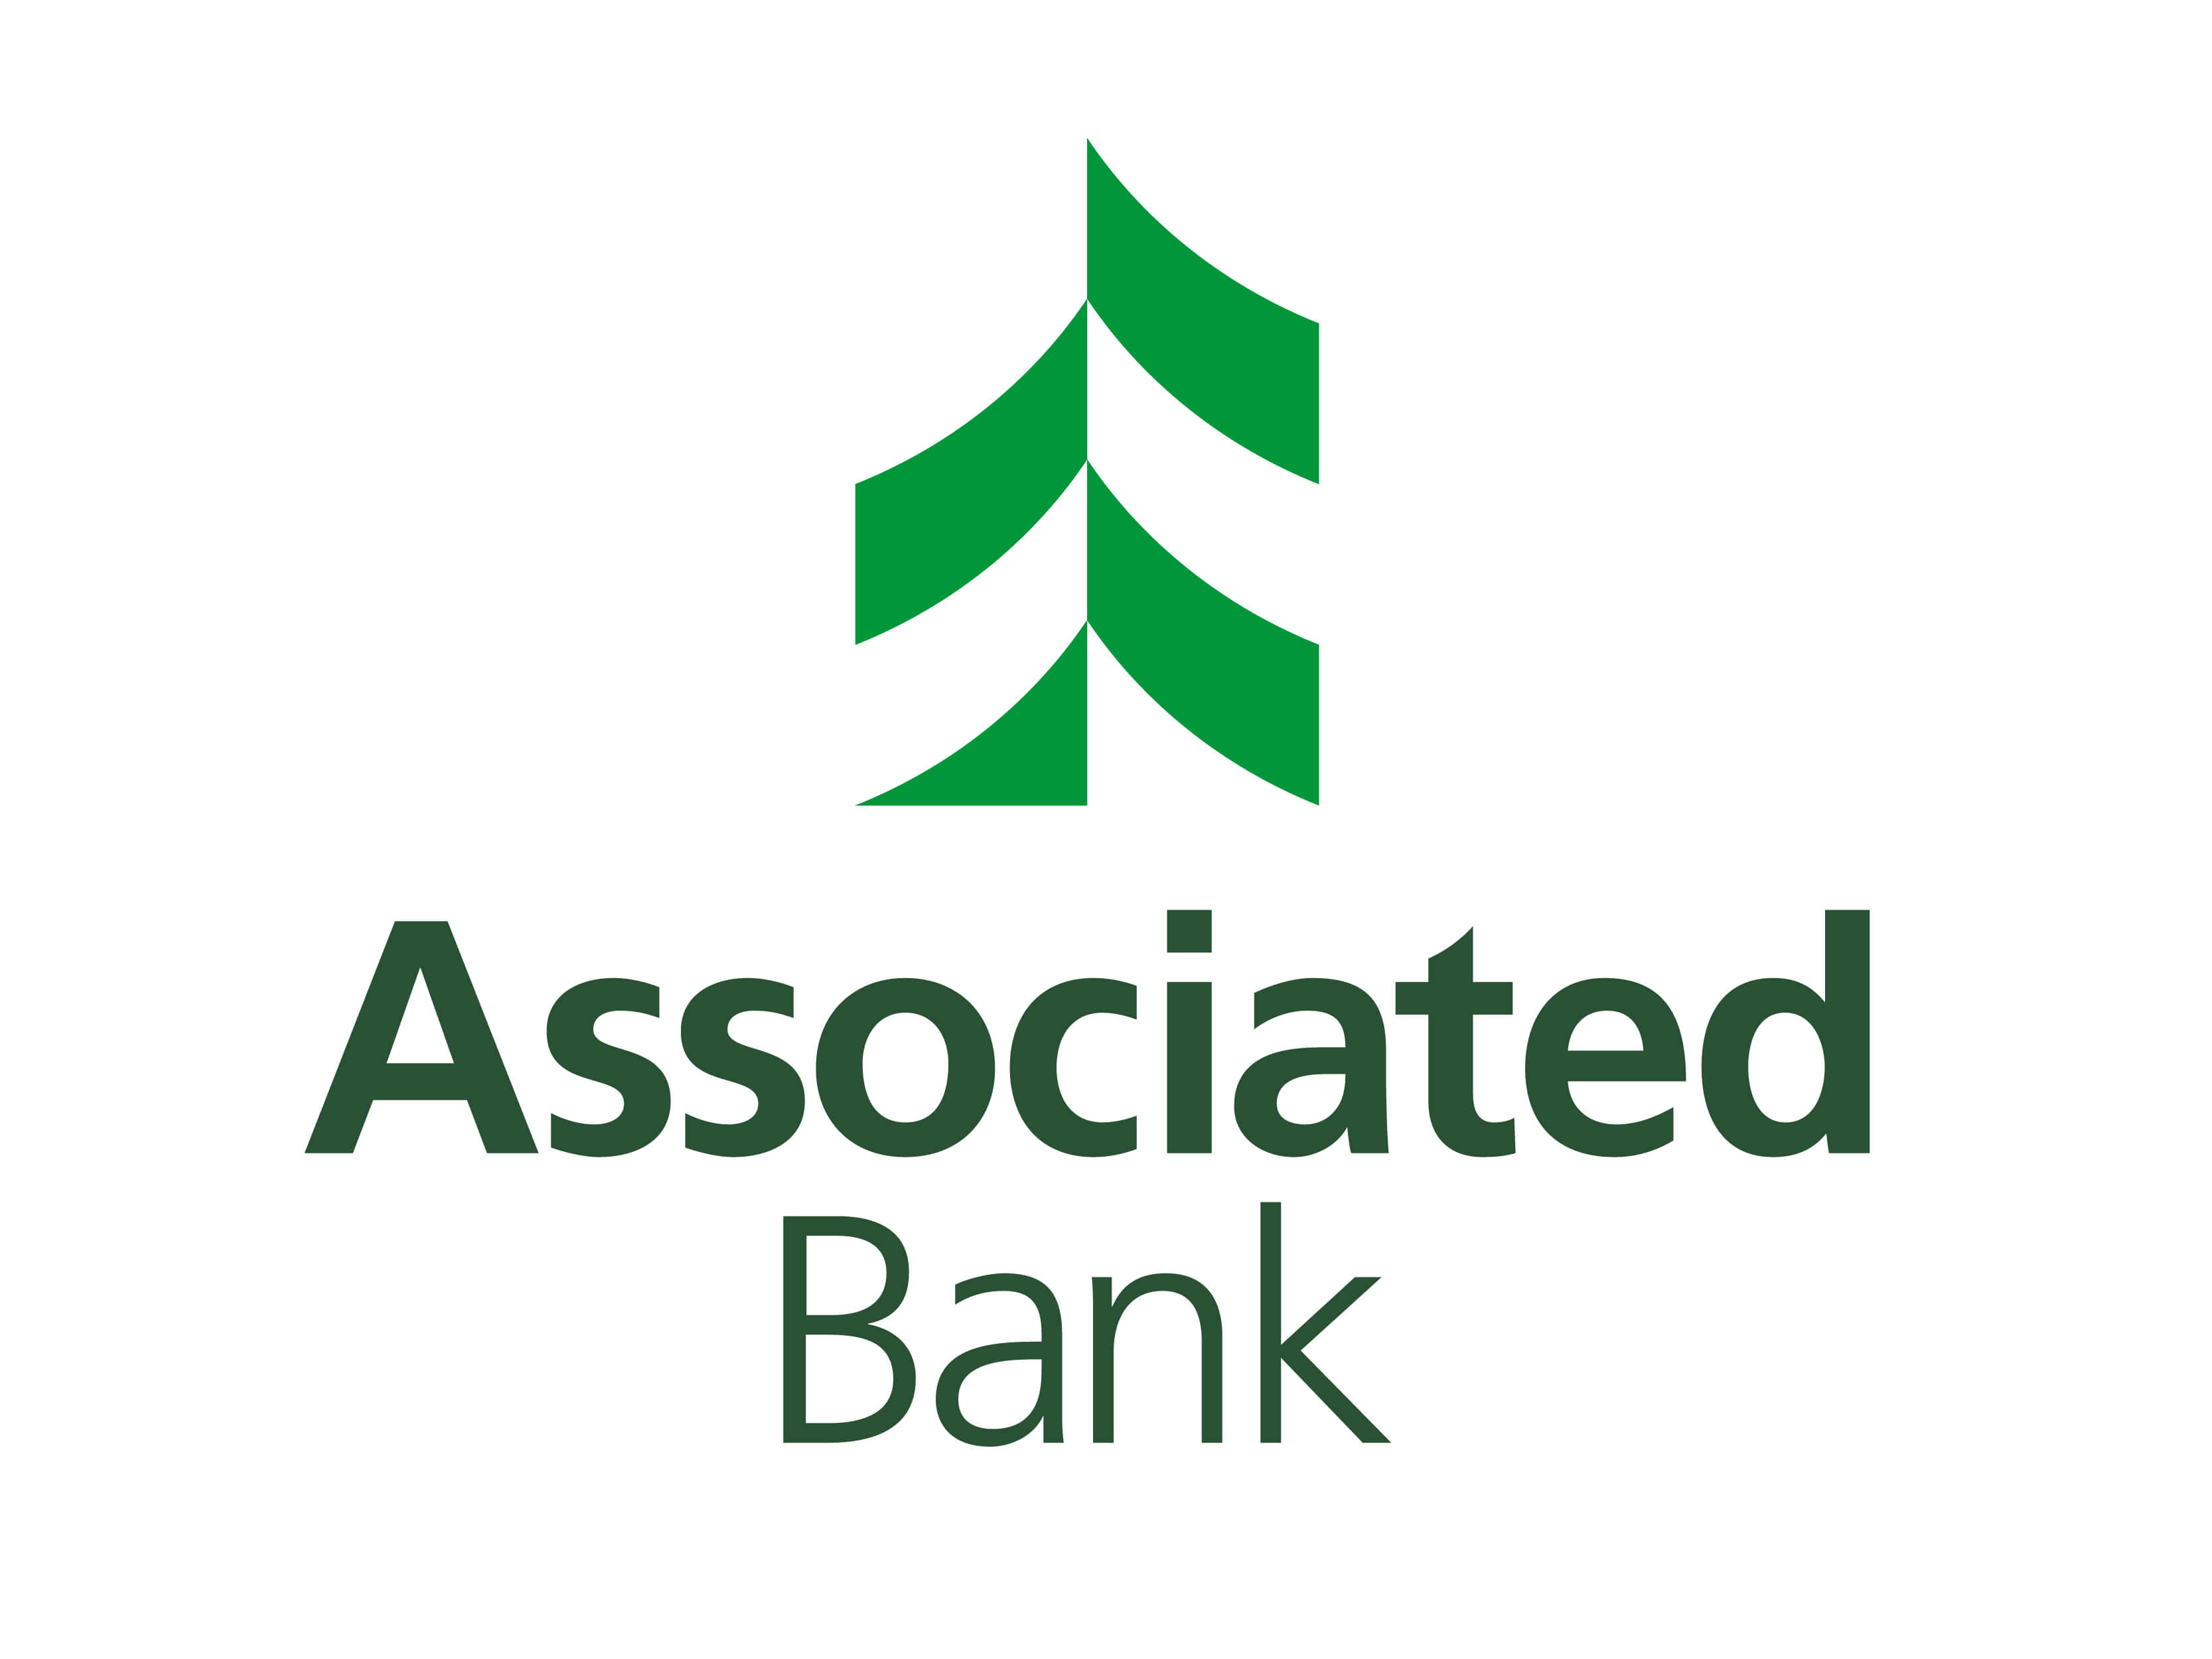 Green Bank Logo - Financial Services Branding